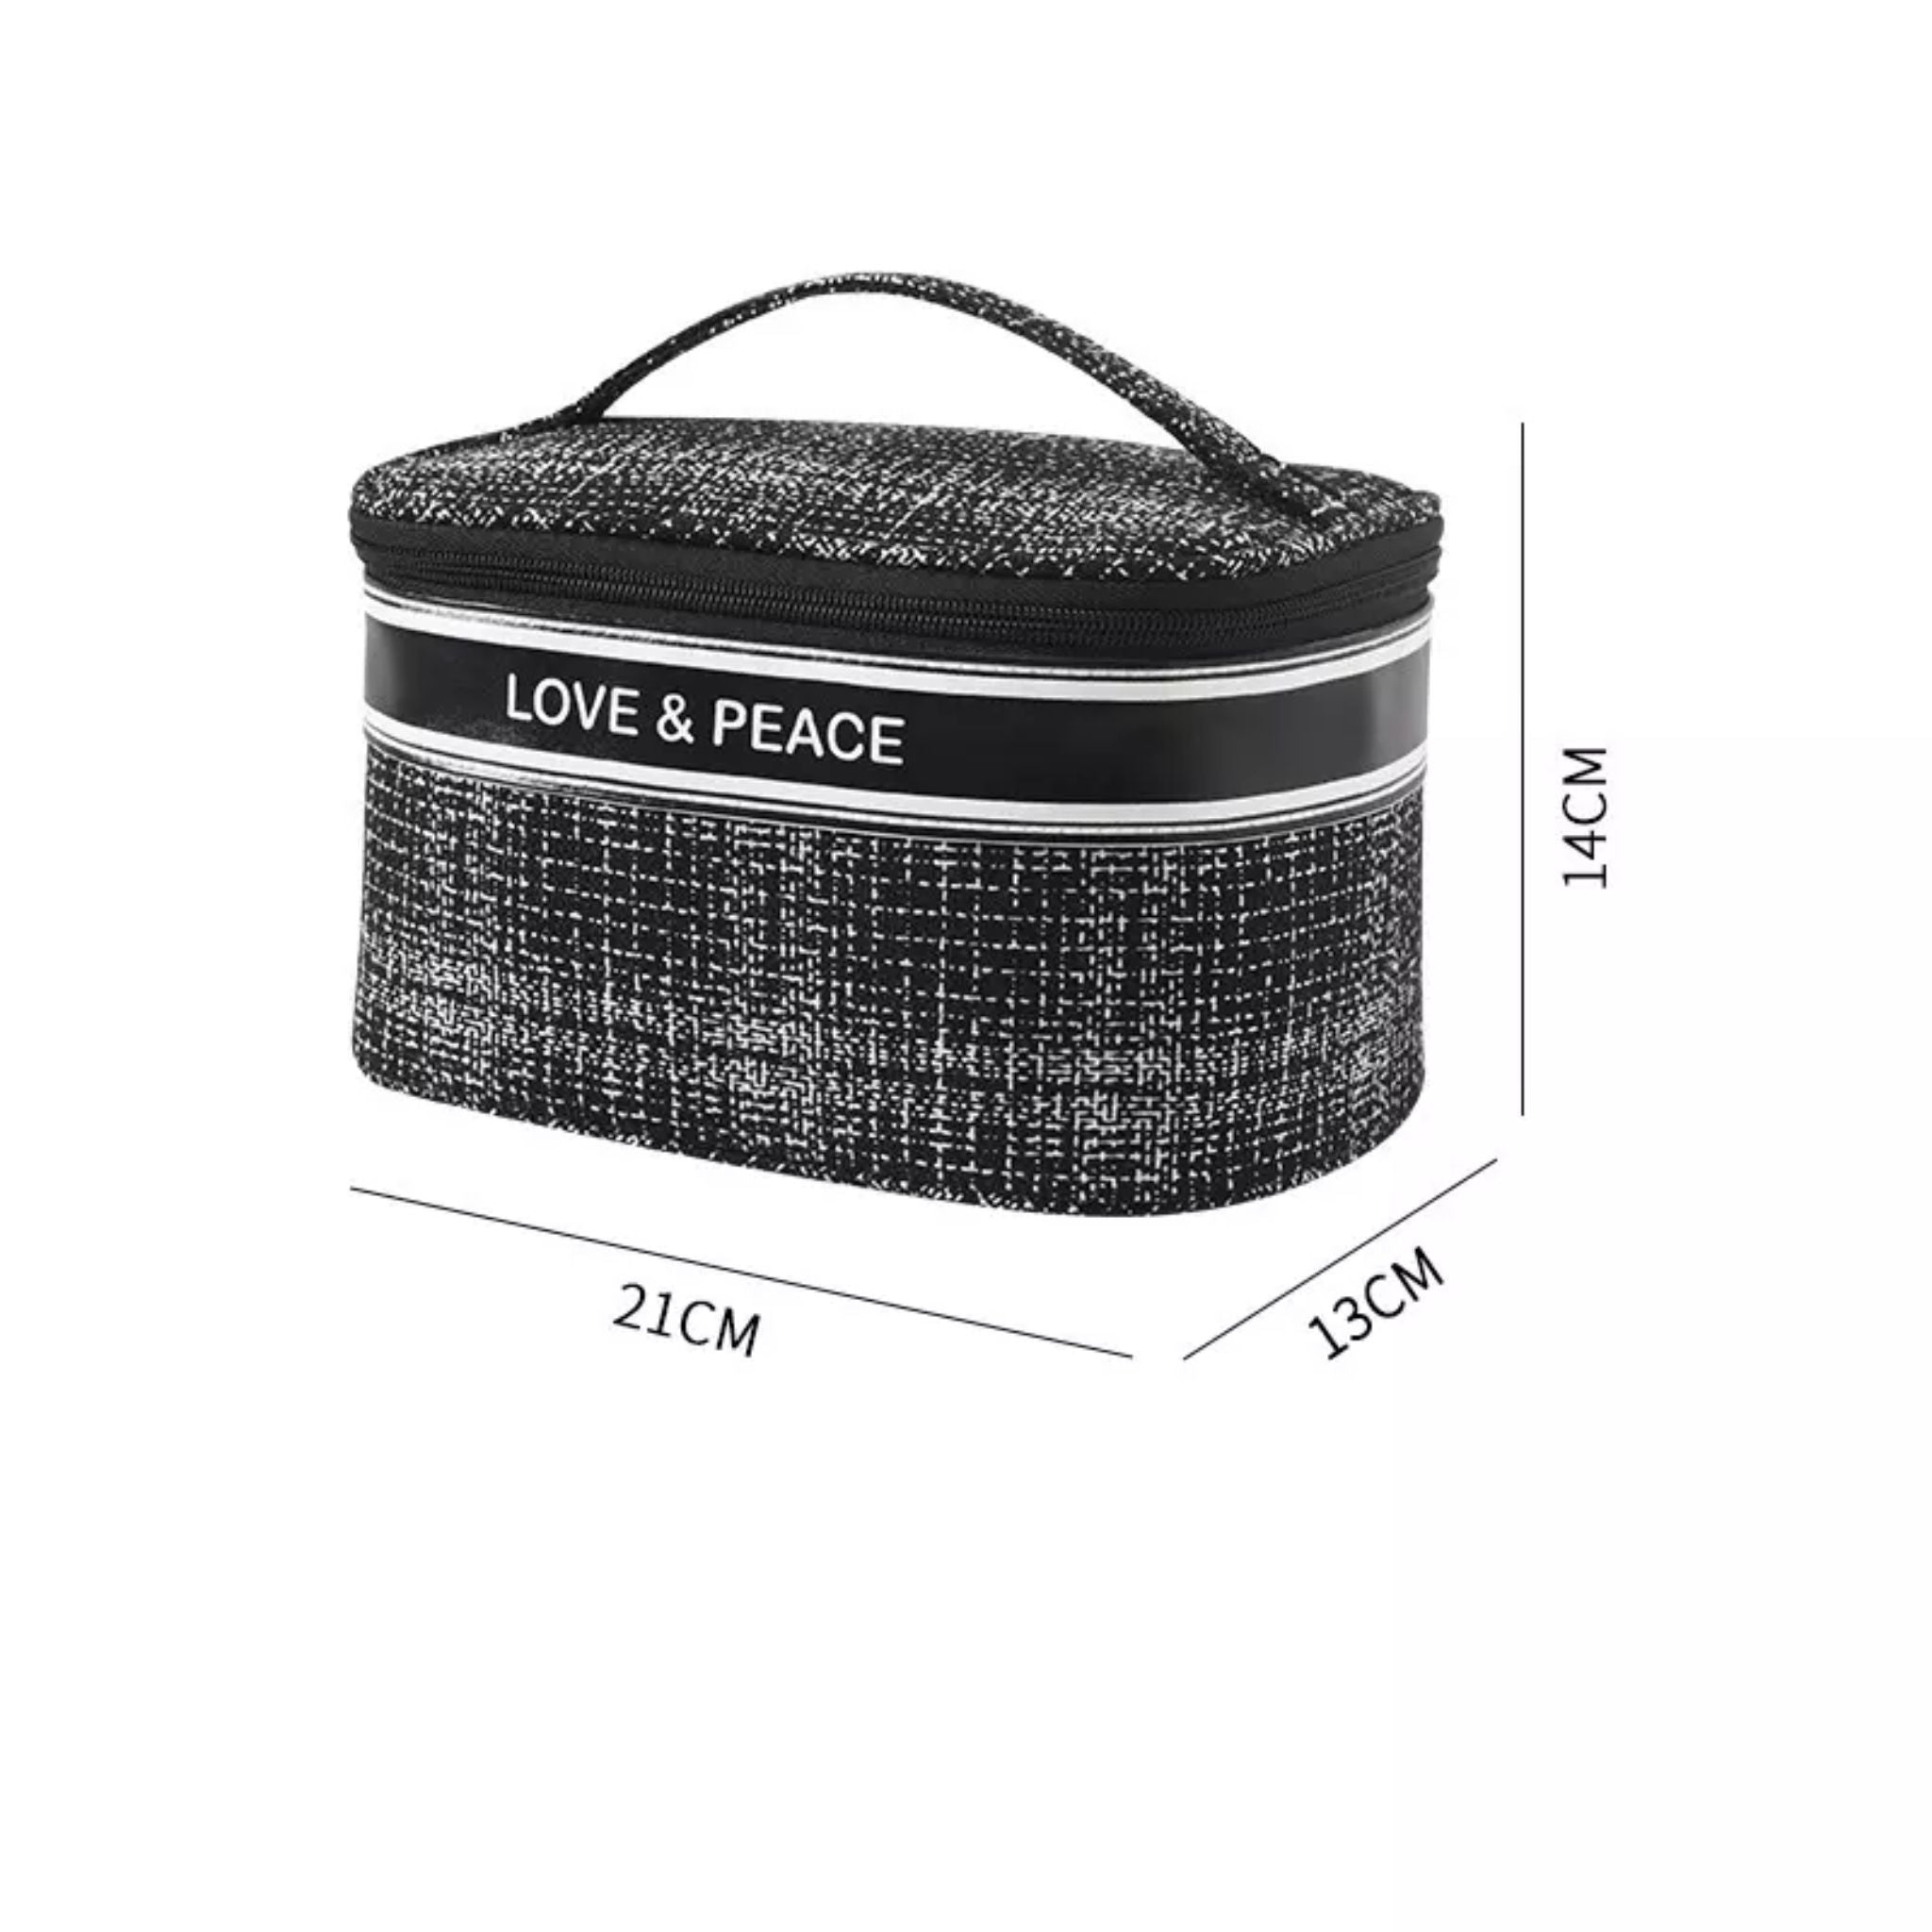 GRAZIENI Portable Travel Cosmetic Bag - Black